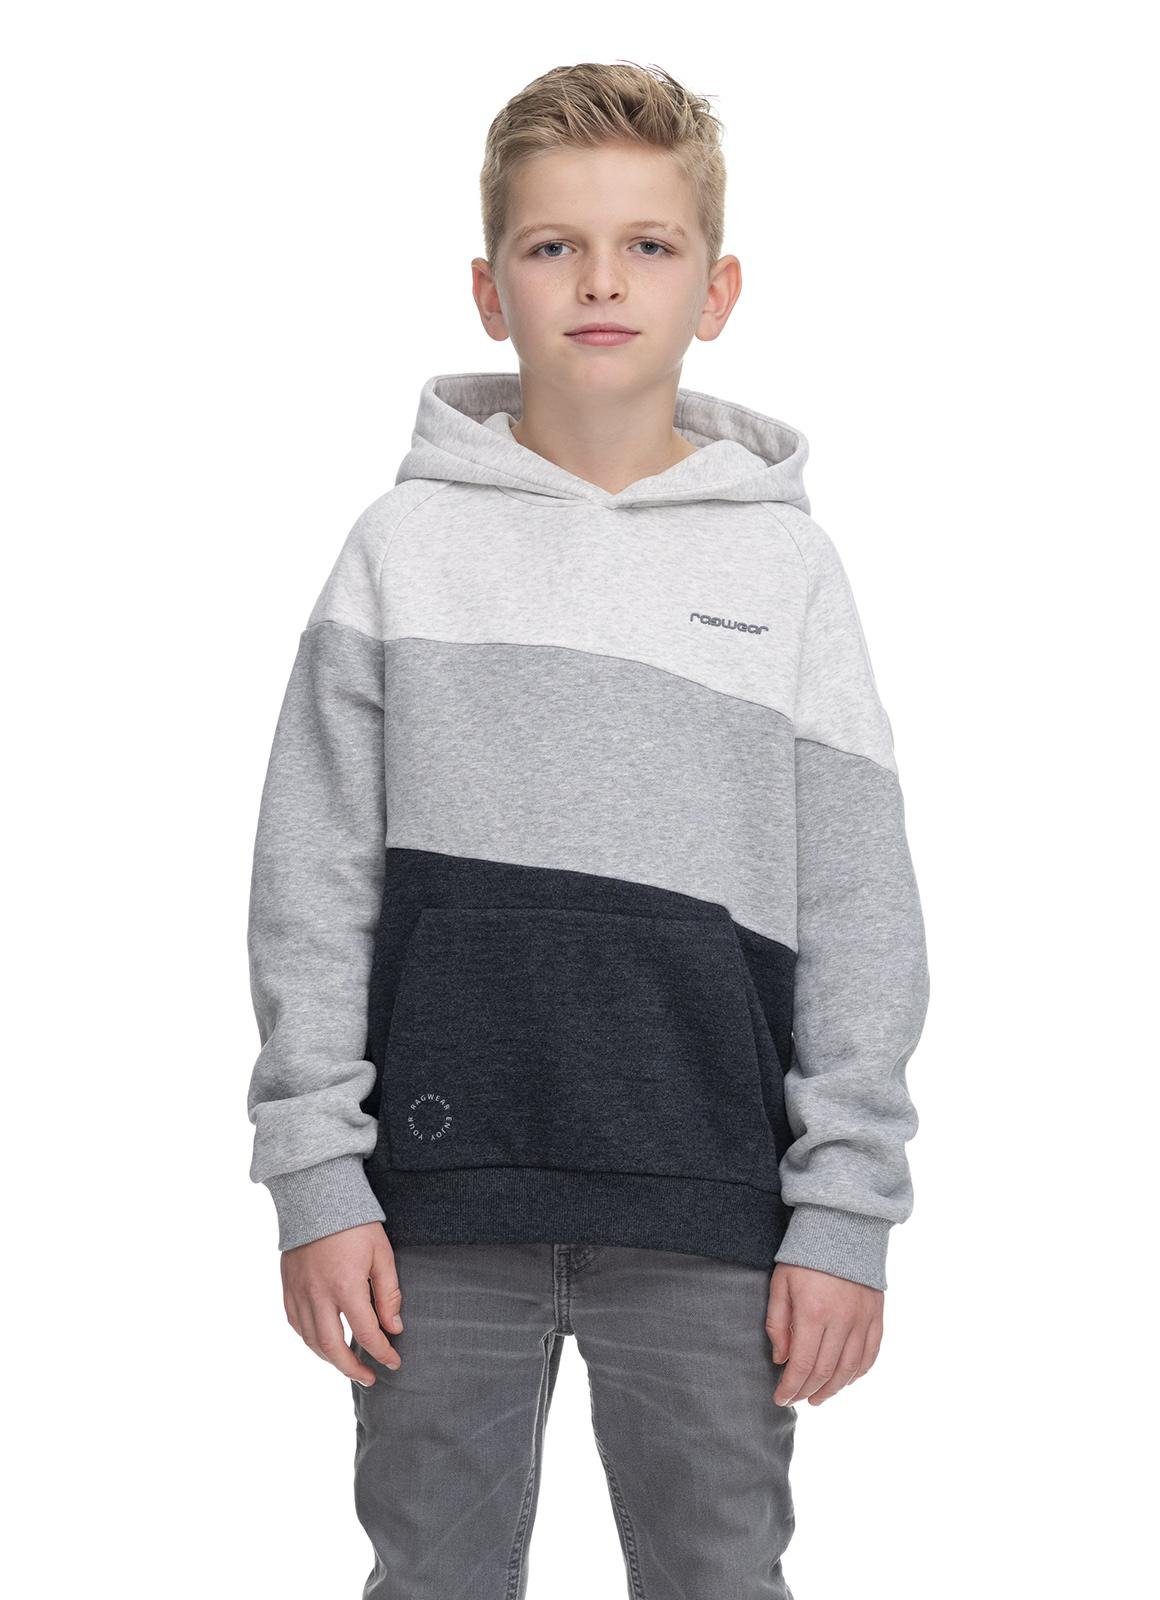 Jungen großer mit Kapuzenpullover Kapuzensweater Vendio Ragwear grau Kinder Kapuze